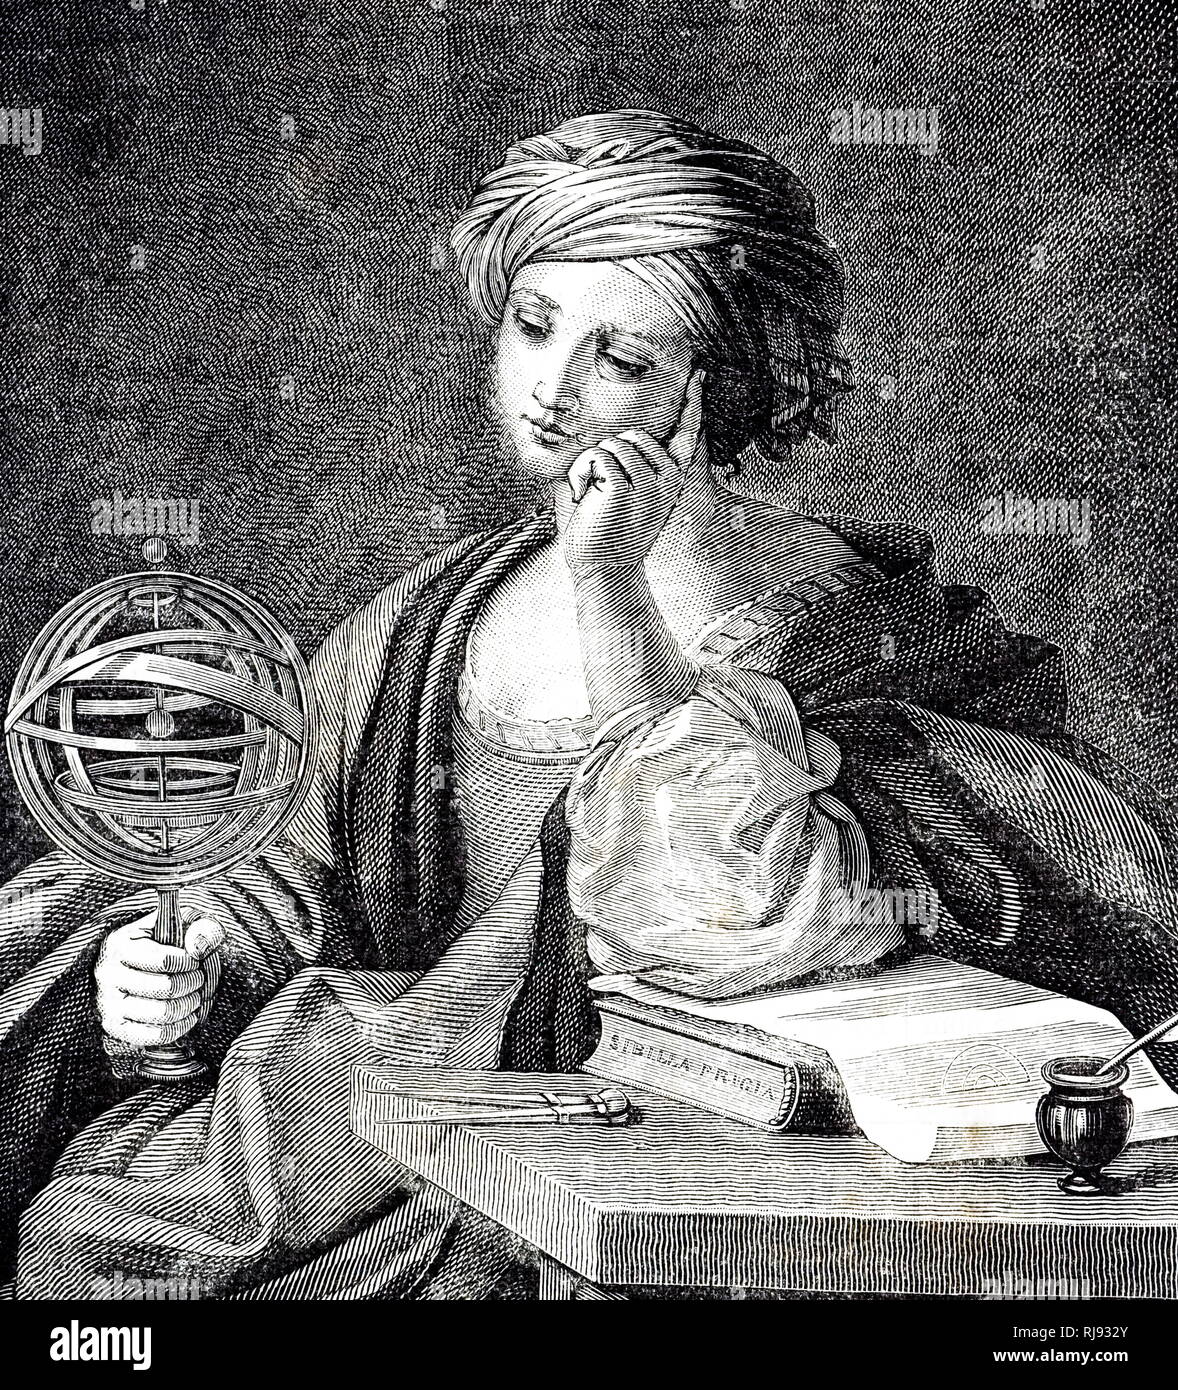 Eine allegorische Bild der Astronomie gezeigt, die im Besitz einer Armillarsphäre. Vom 19. Jahrhundert Stockfoto